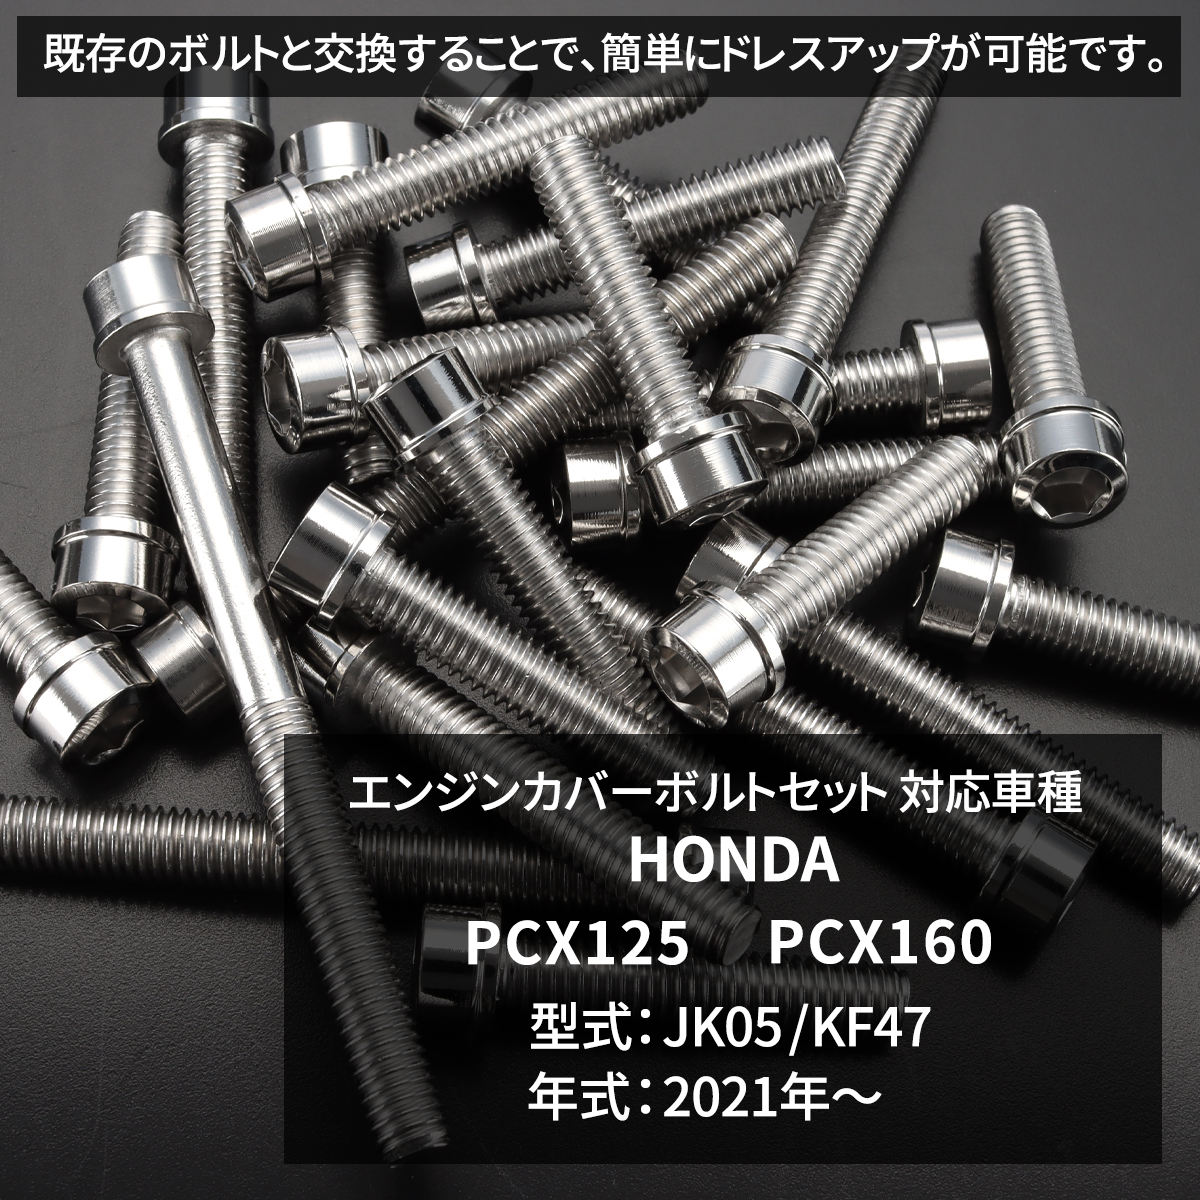 PCX125 PCX160 JK05 KF47 2021 год ~ блок цилиндров покрытие болт 14 шт. комплект из нержавеющей стали Honda car для серебряный цвет TB12091